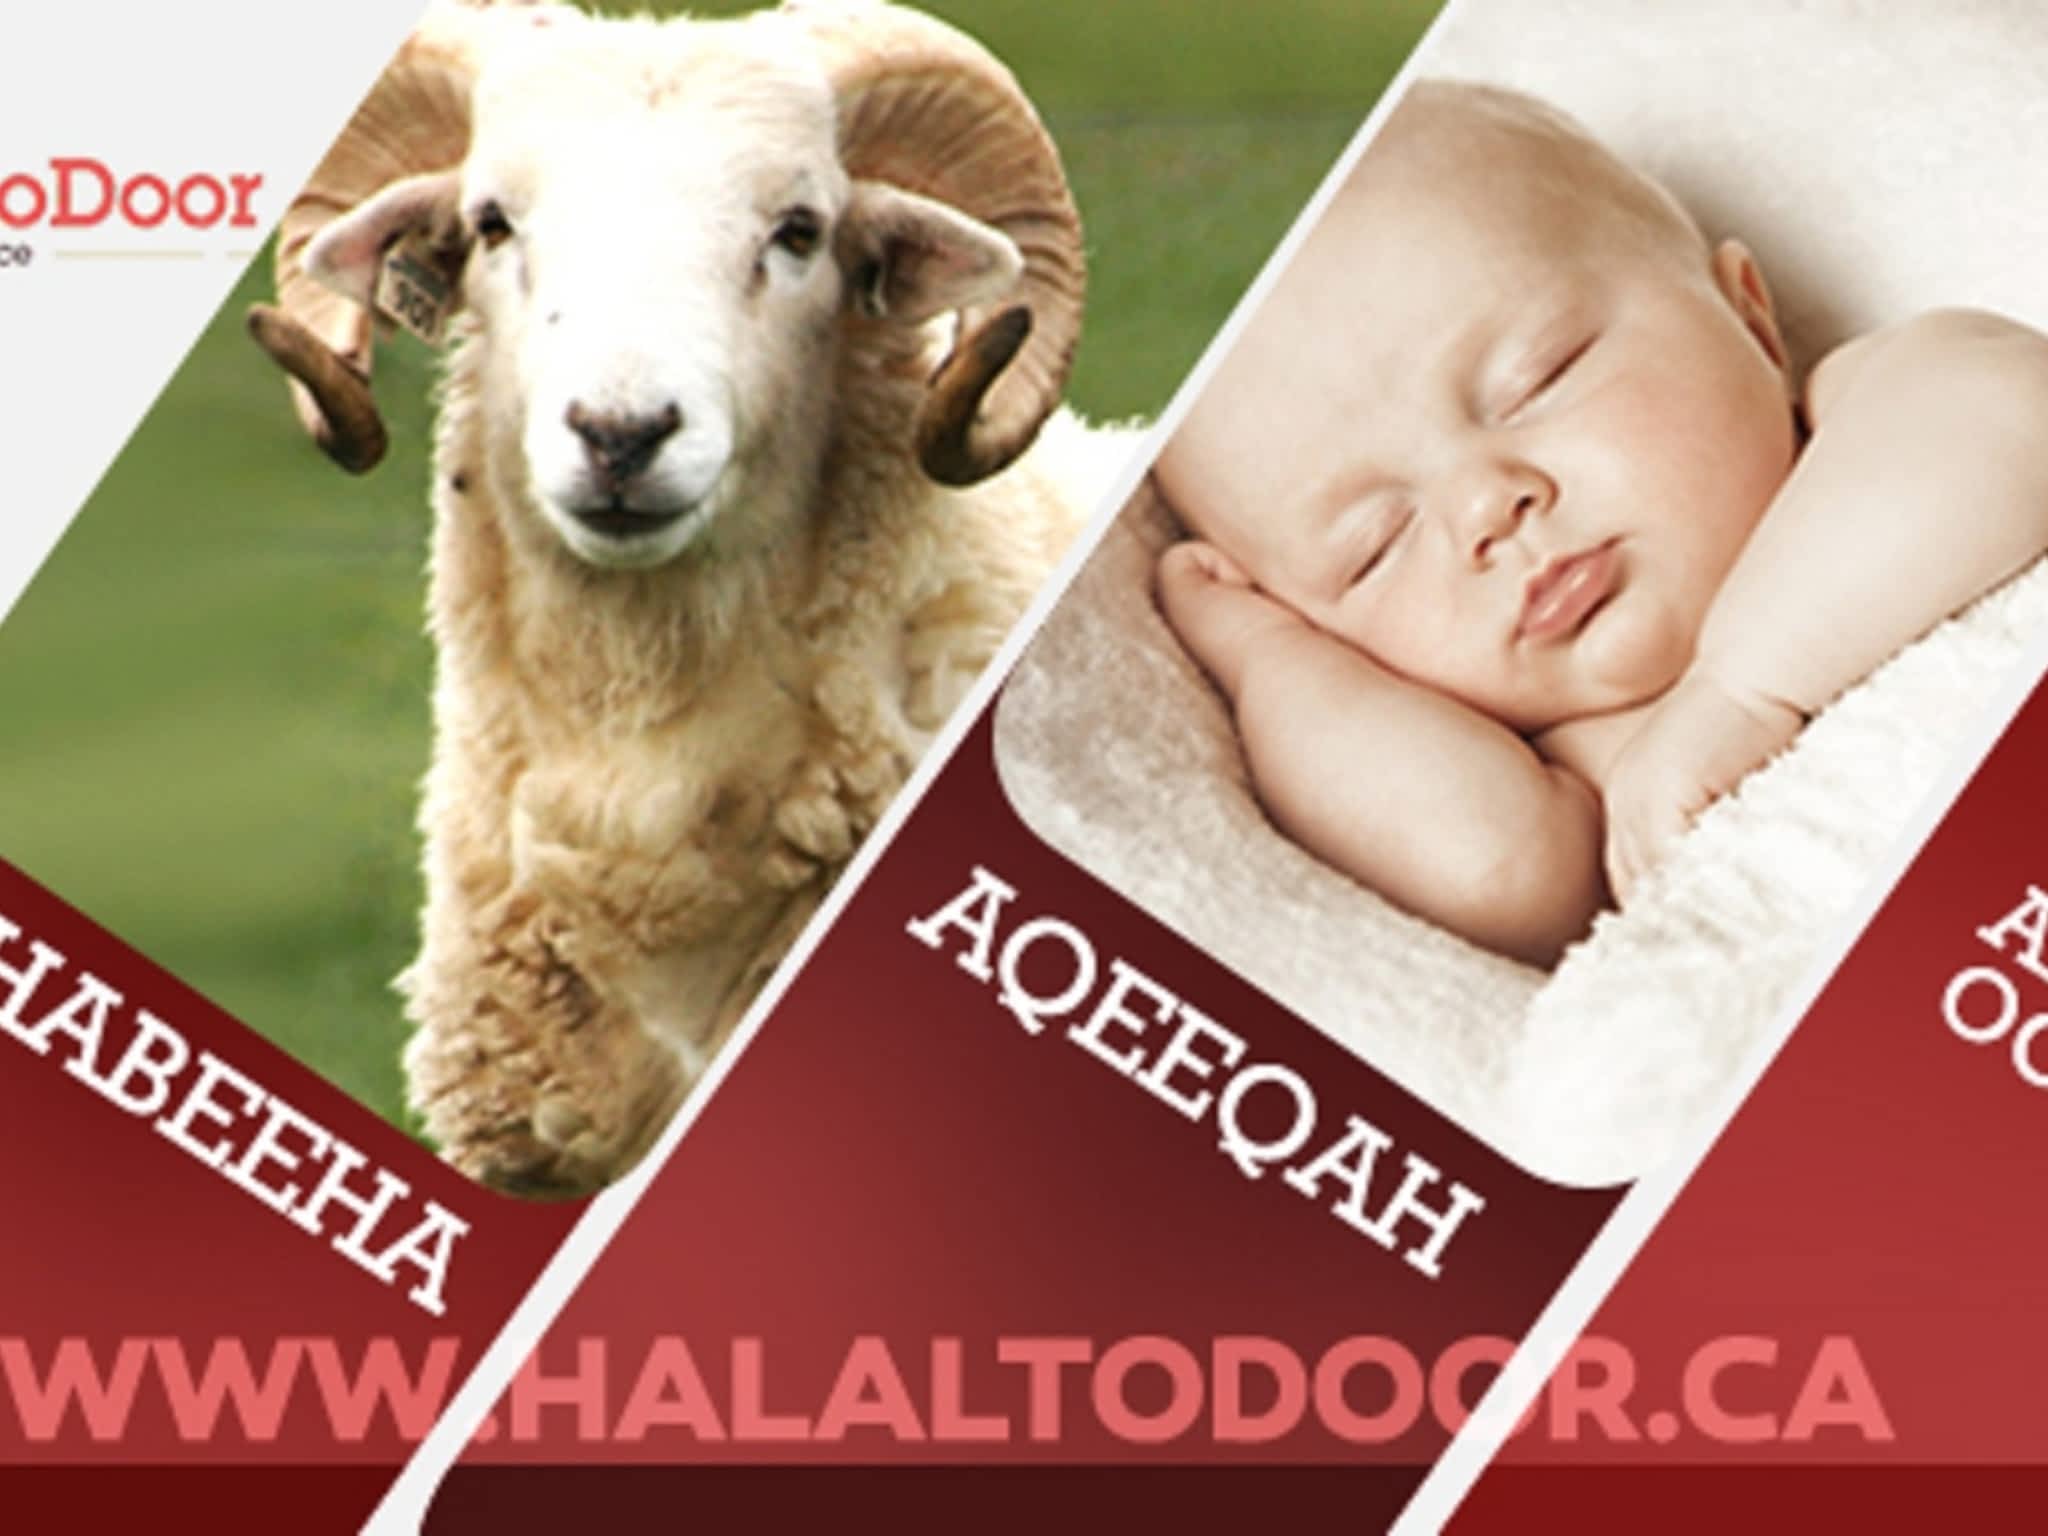 photo Halal to Door (Online Butchery)